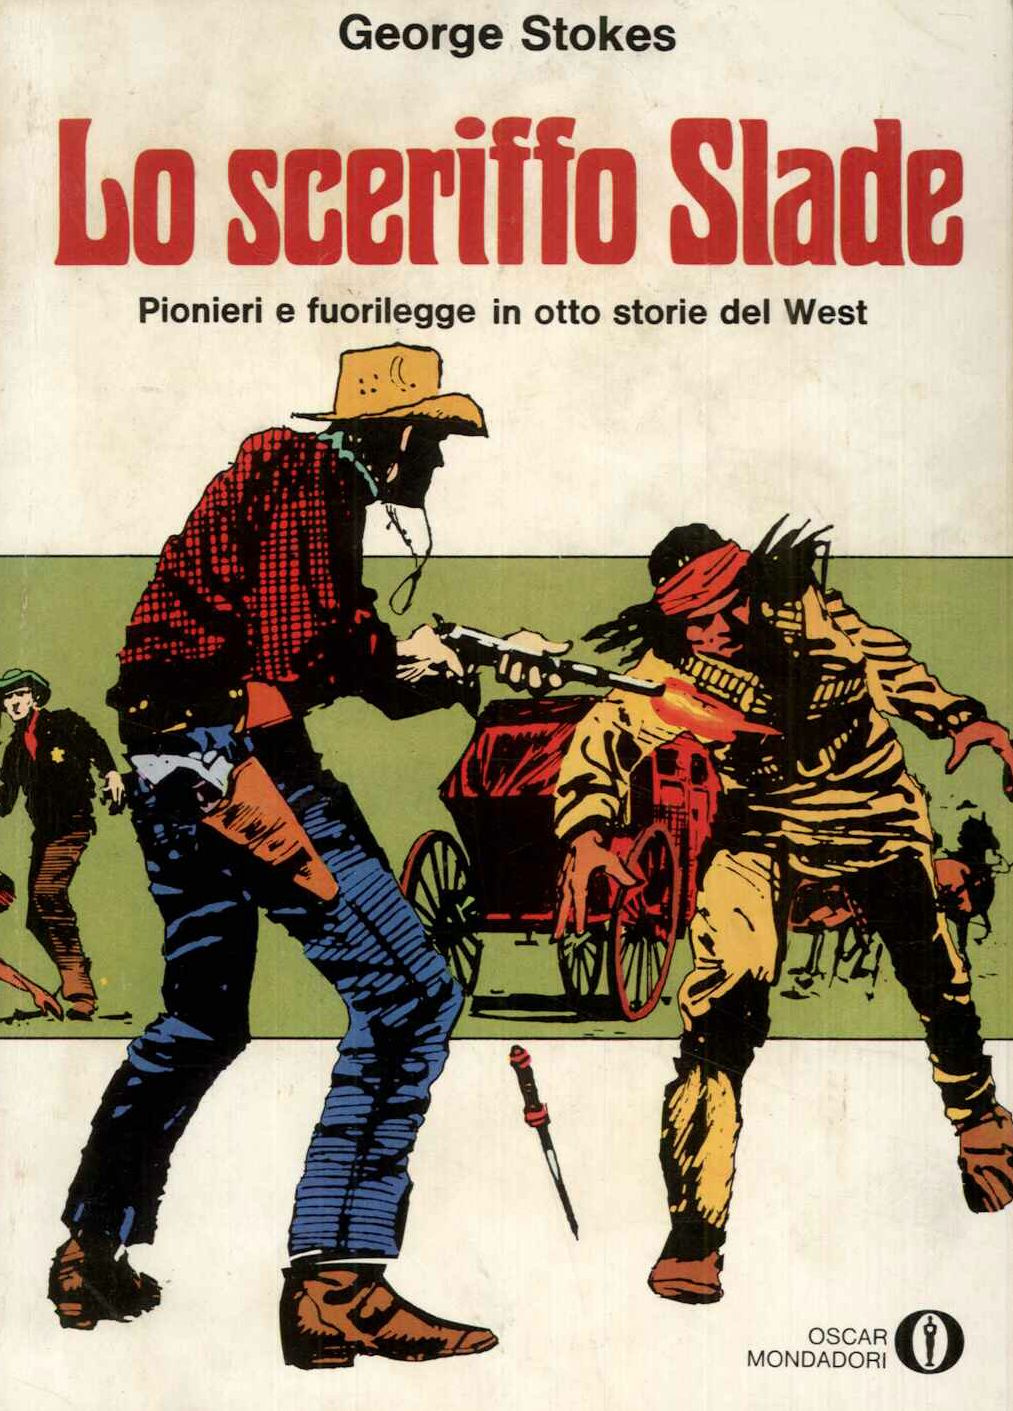 Lo sceriffo Slade- pionieri e fuorilegge in otto storie del West